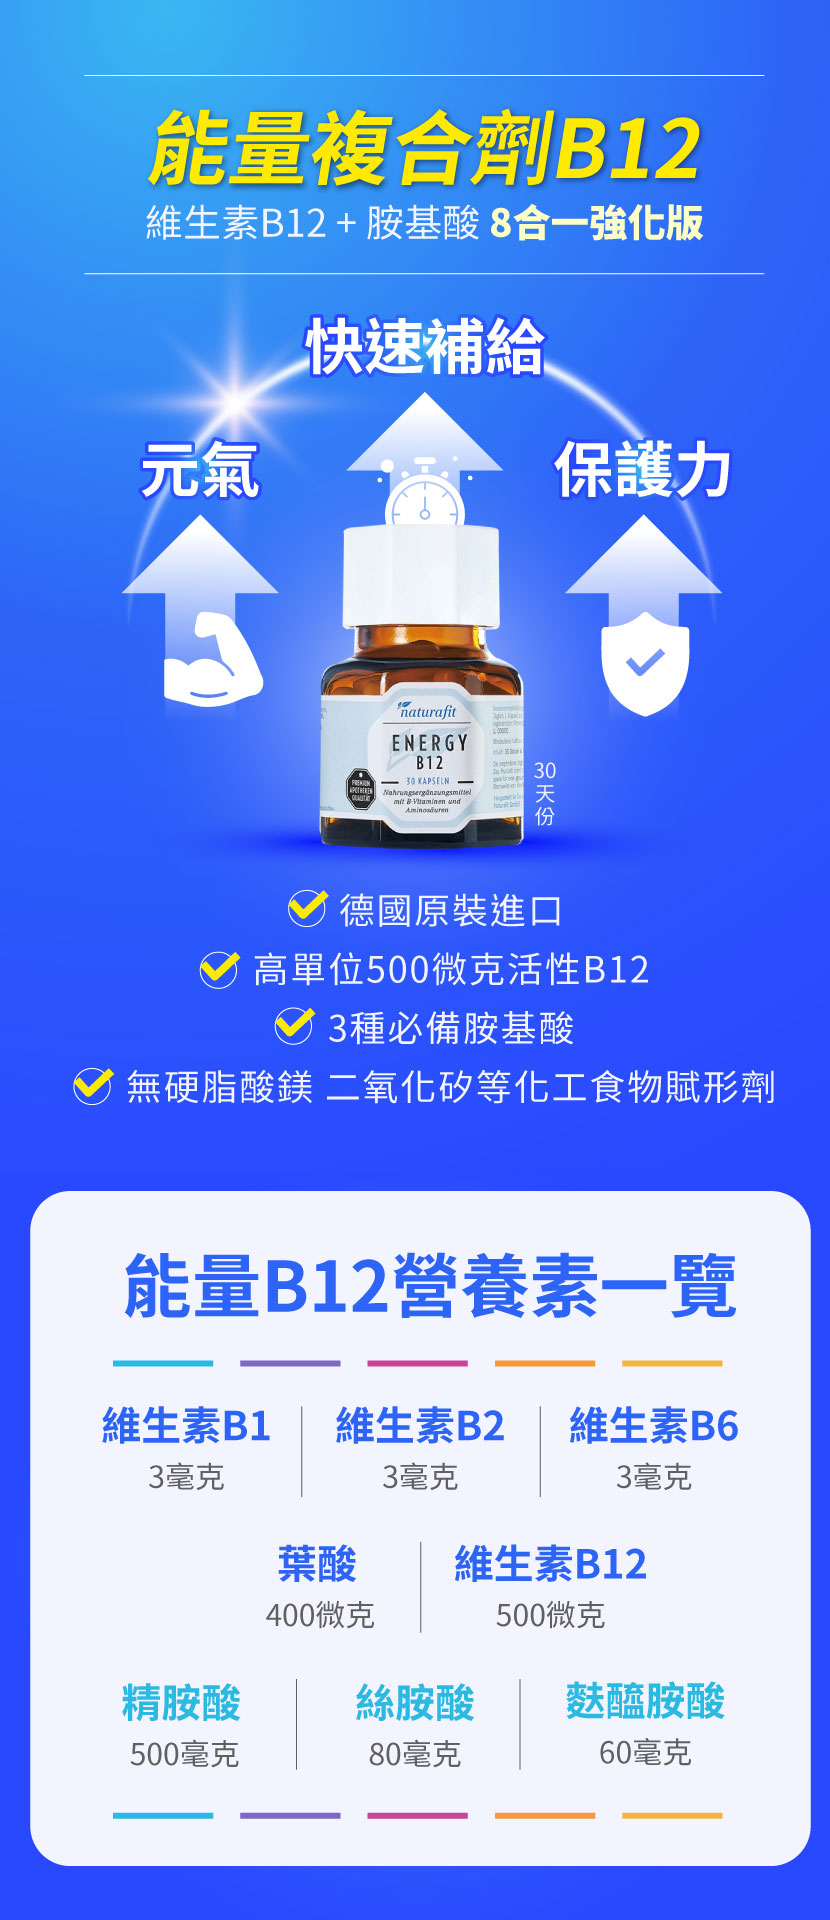 b12食物,活性B群,naturafit b12,維生素B12,維他命b12,活性B12,神經修復